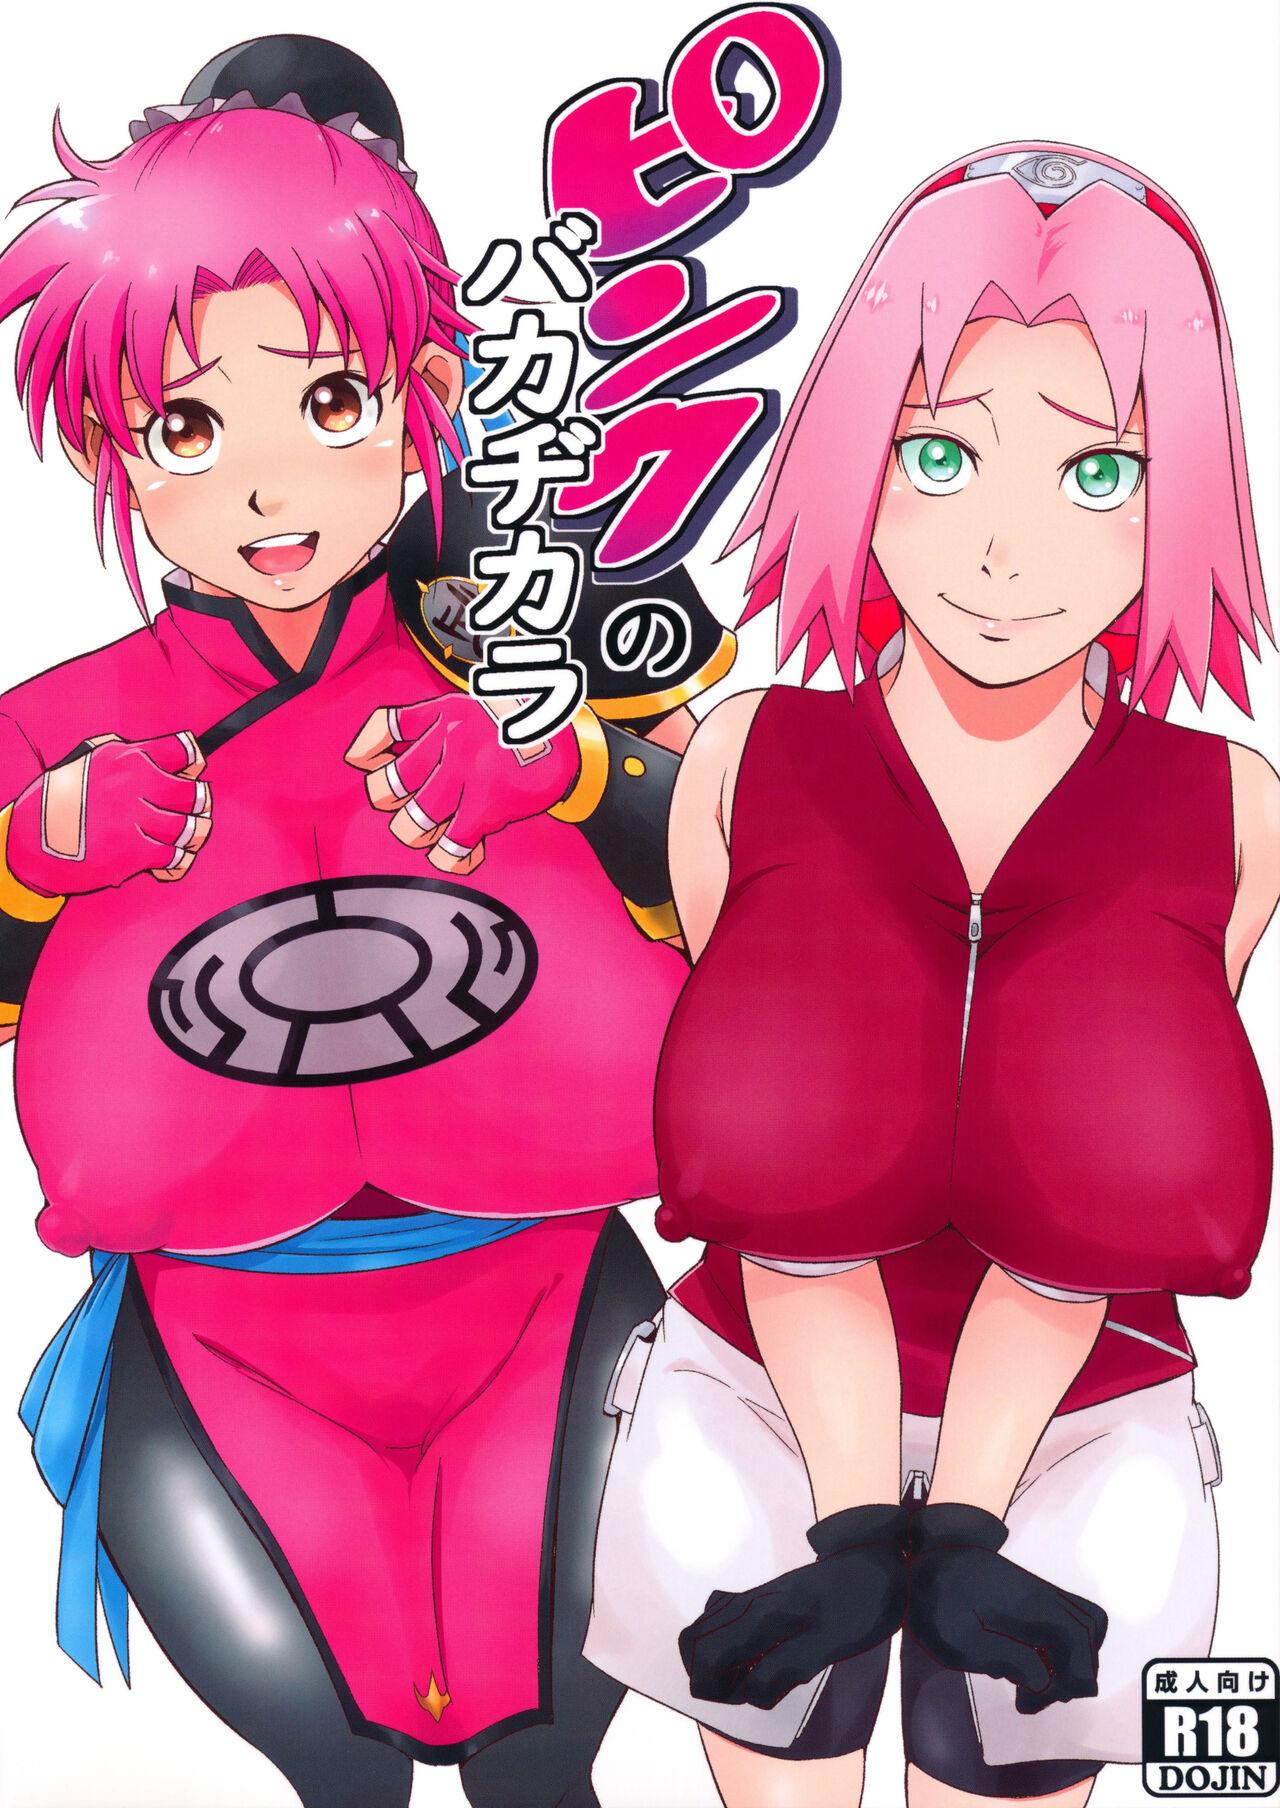 Jap Pink no Bakajikara | Strong Pink Haired Girls - Naruto Dragon quest dai no daibouken Ddf Porn - Page 1